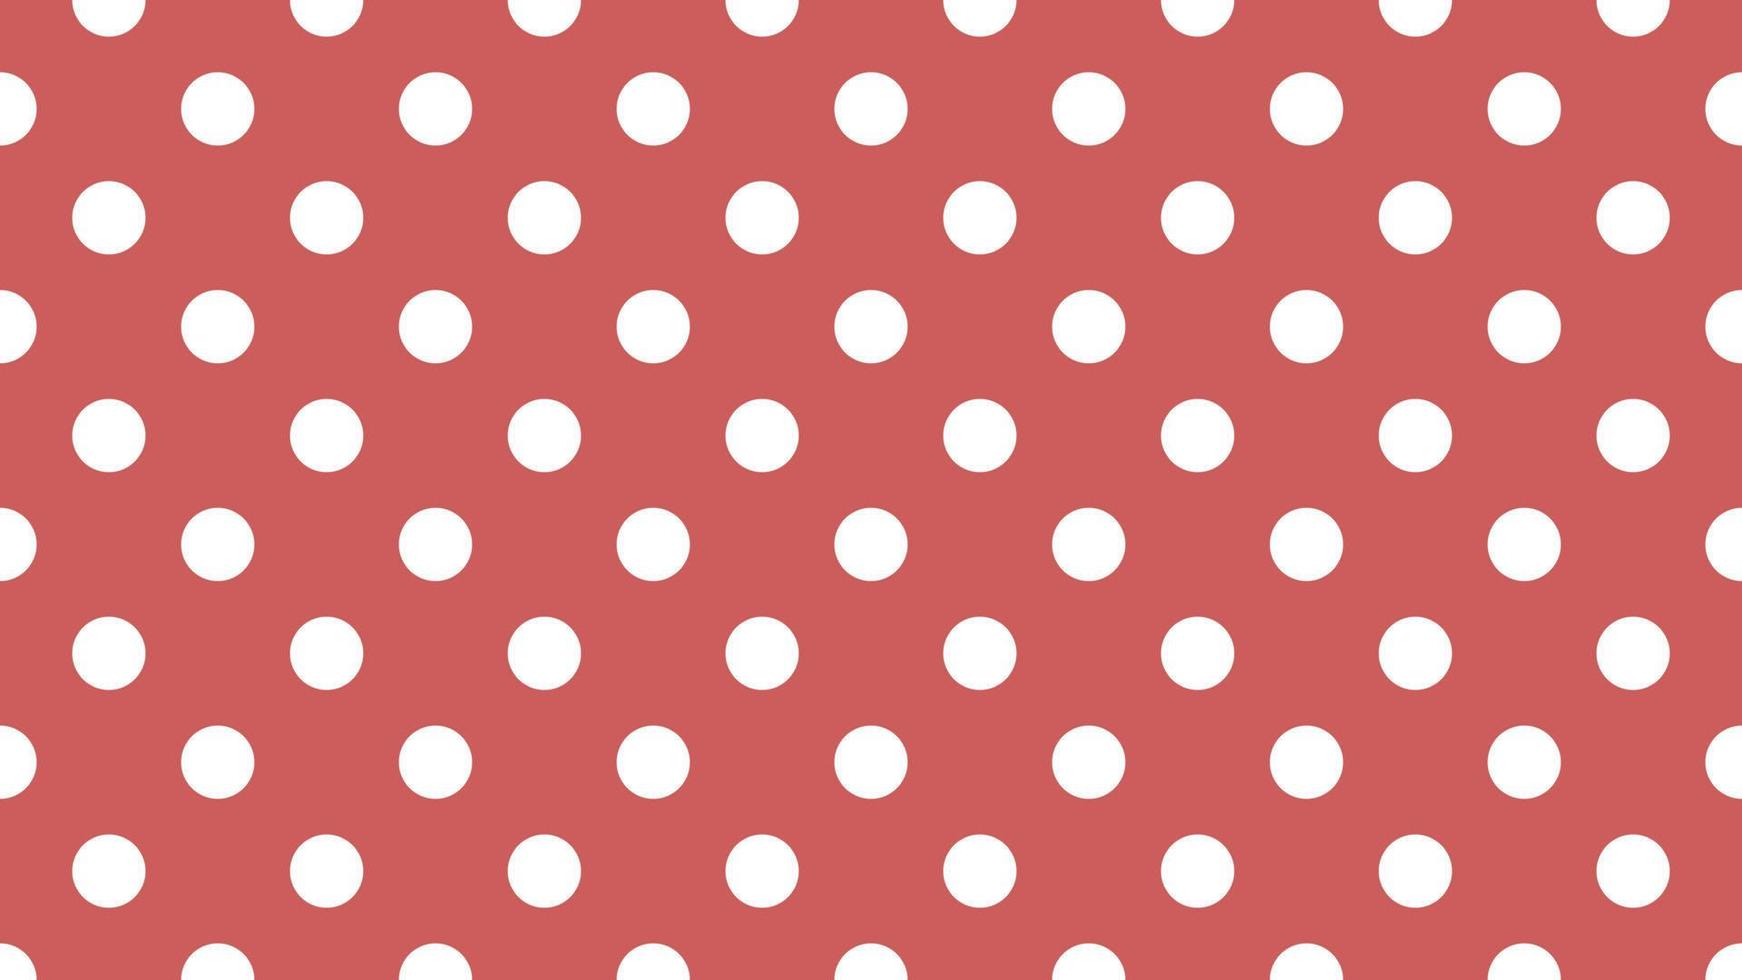 bianca colore polka puntini al di sopra di indiano rosso sfondo vettore